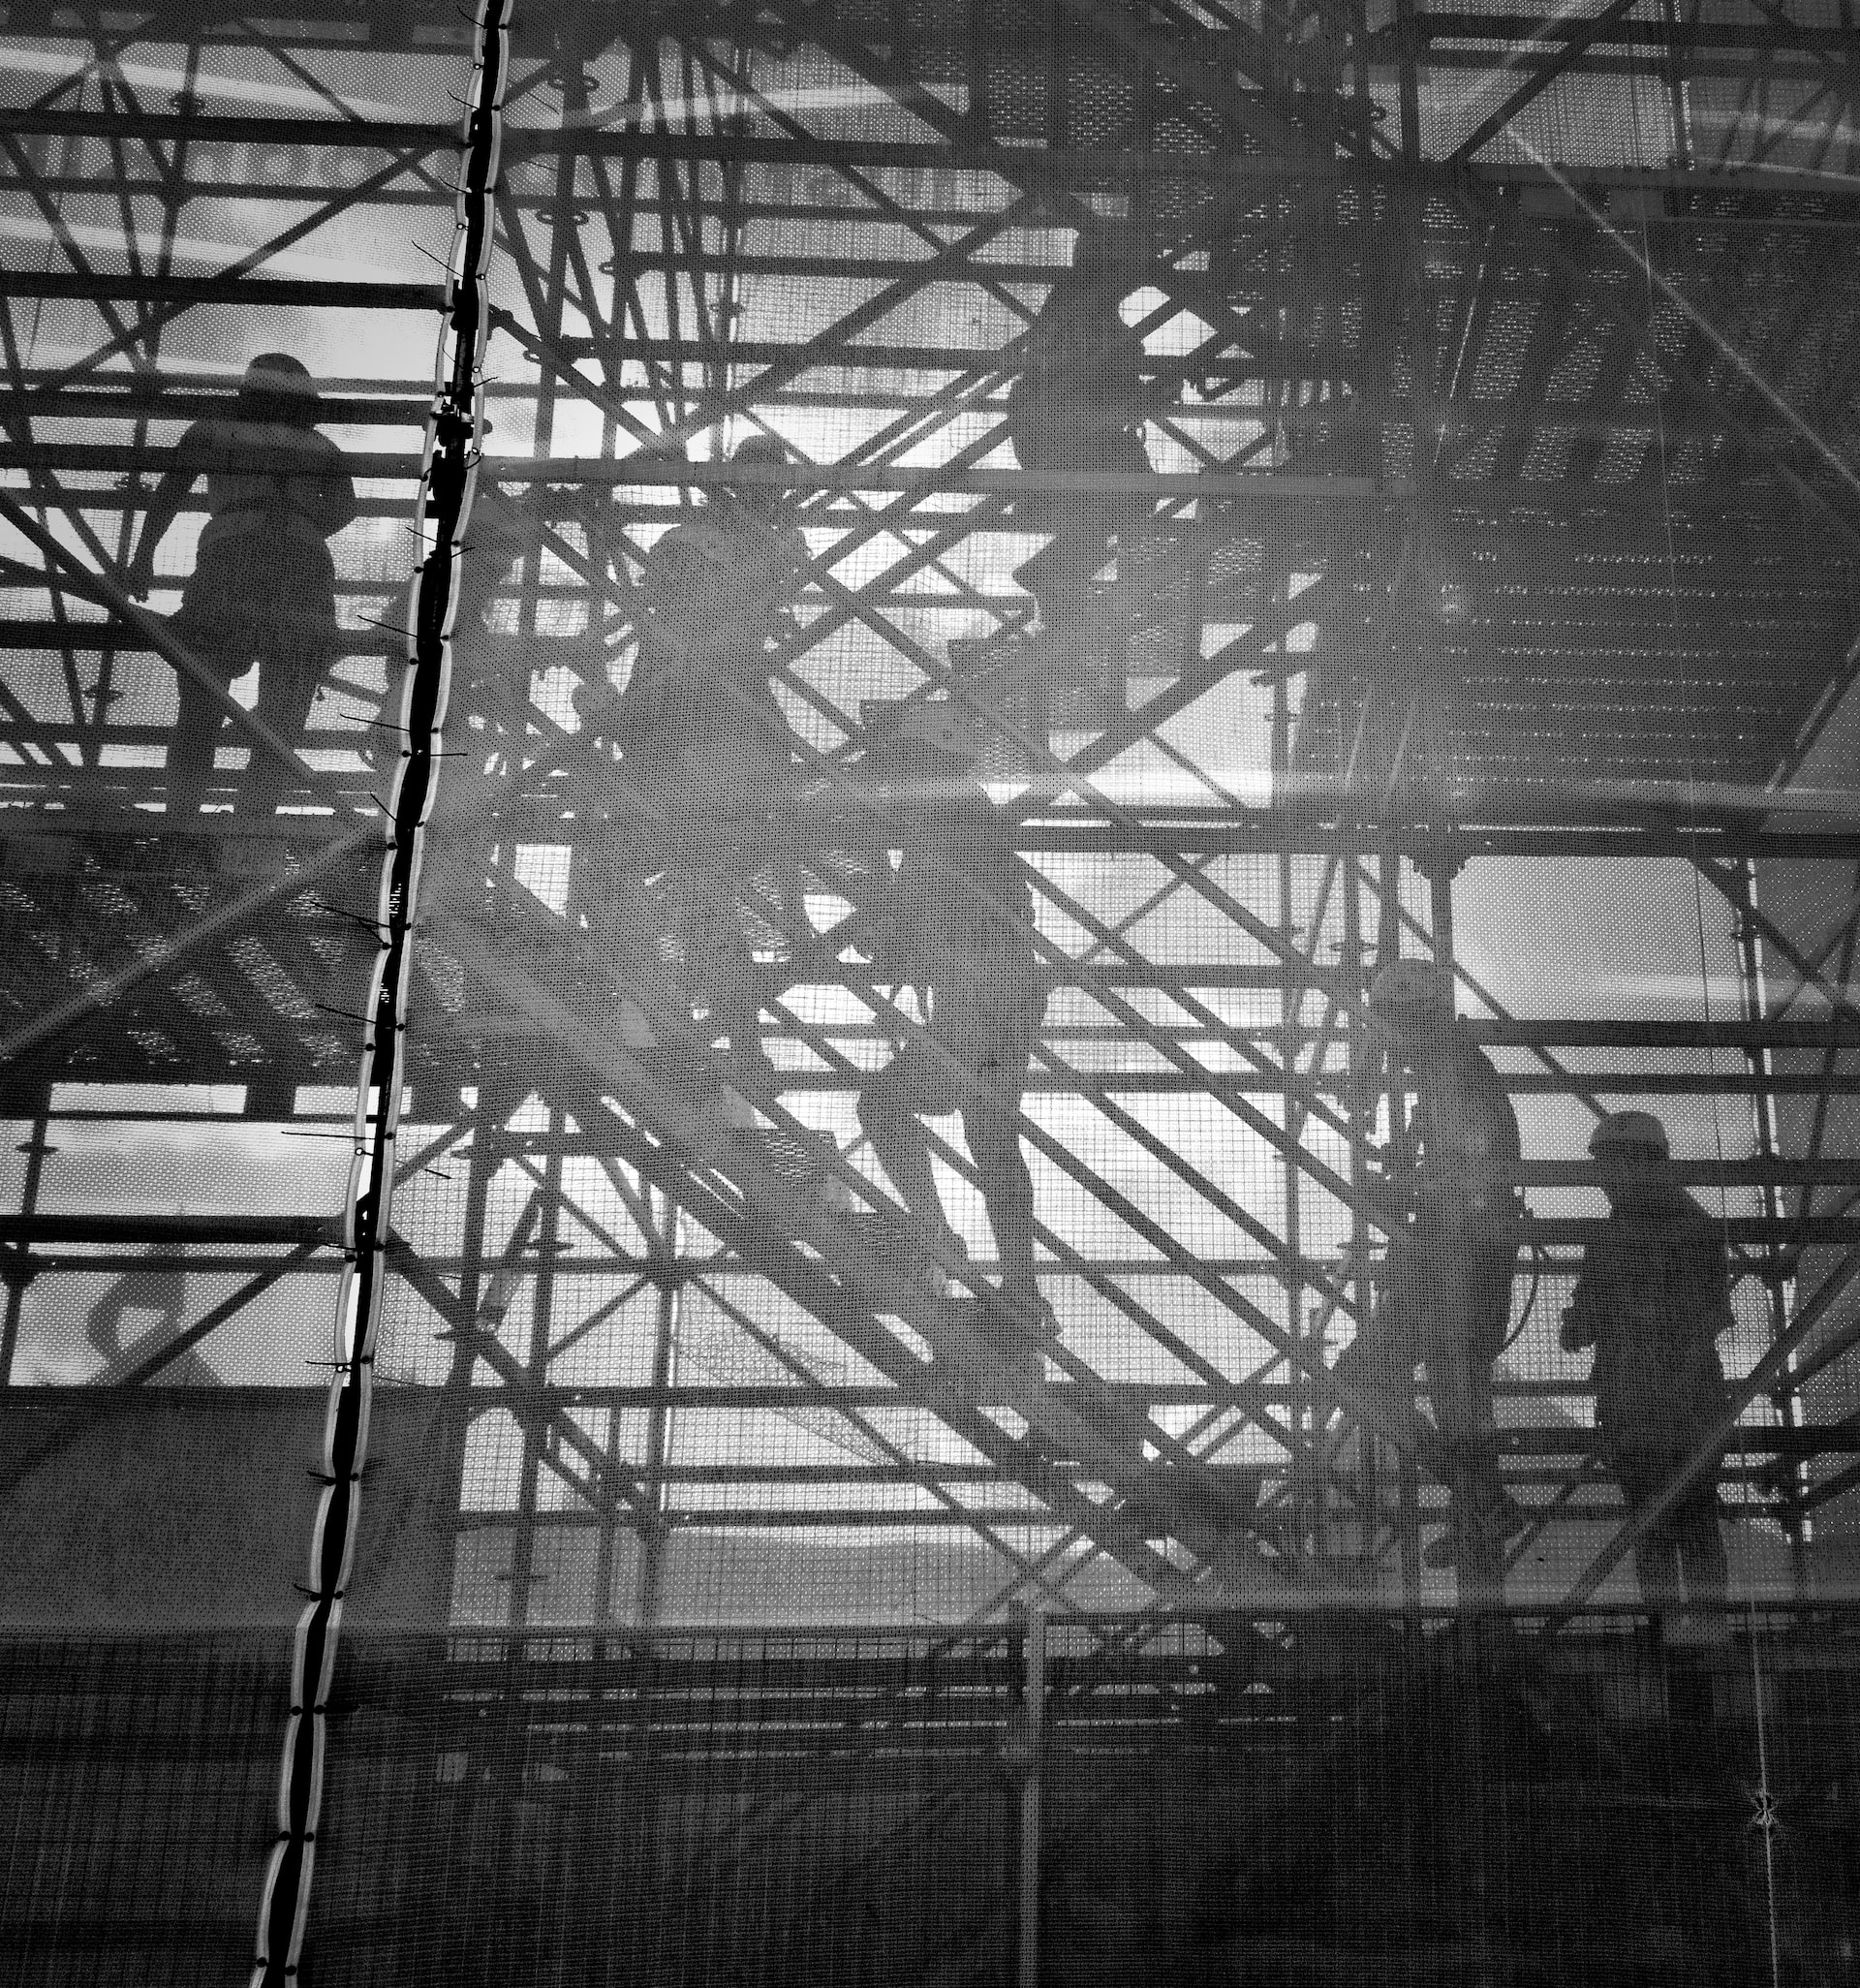 Die Schatten von Bauarbeitern auf einem Baugerüst an einer Betonwand.